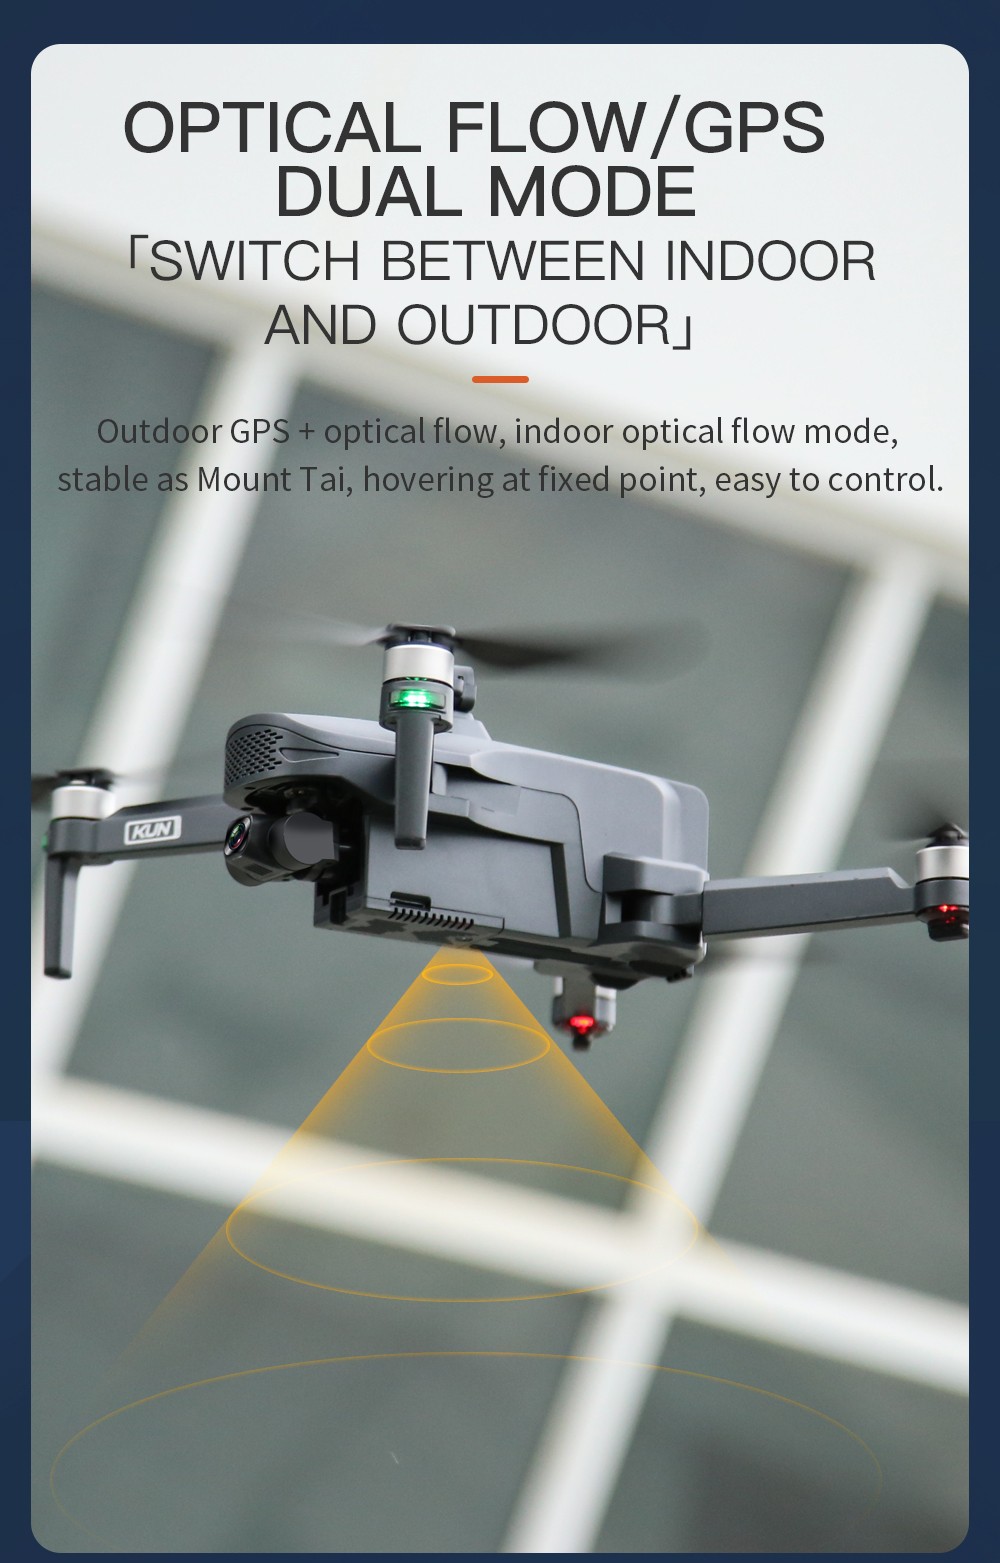 ZLL SG908 MAX 4K 5G WIFI 3KM FPV GPS 3 tengelyes mechanikus gimbal 360 fokos akadályok elkerülése Kefe nélküli RC drone - egy akkumulátor